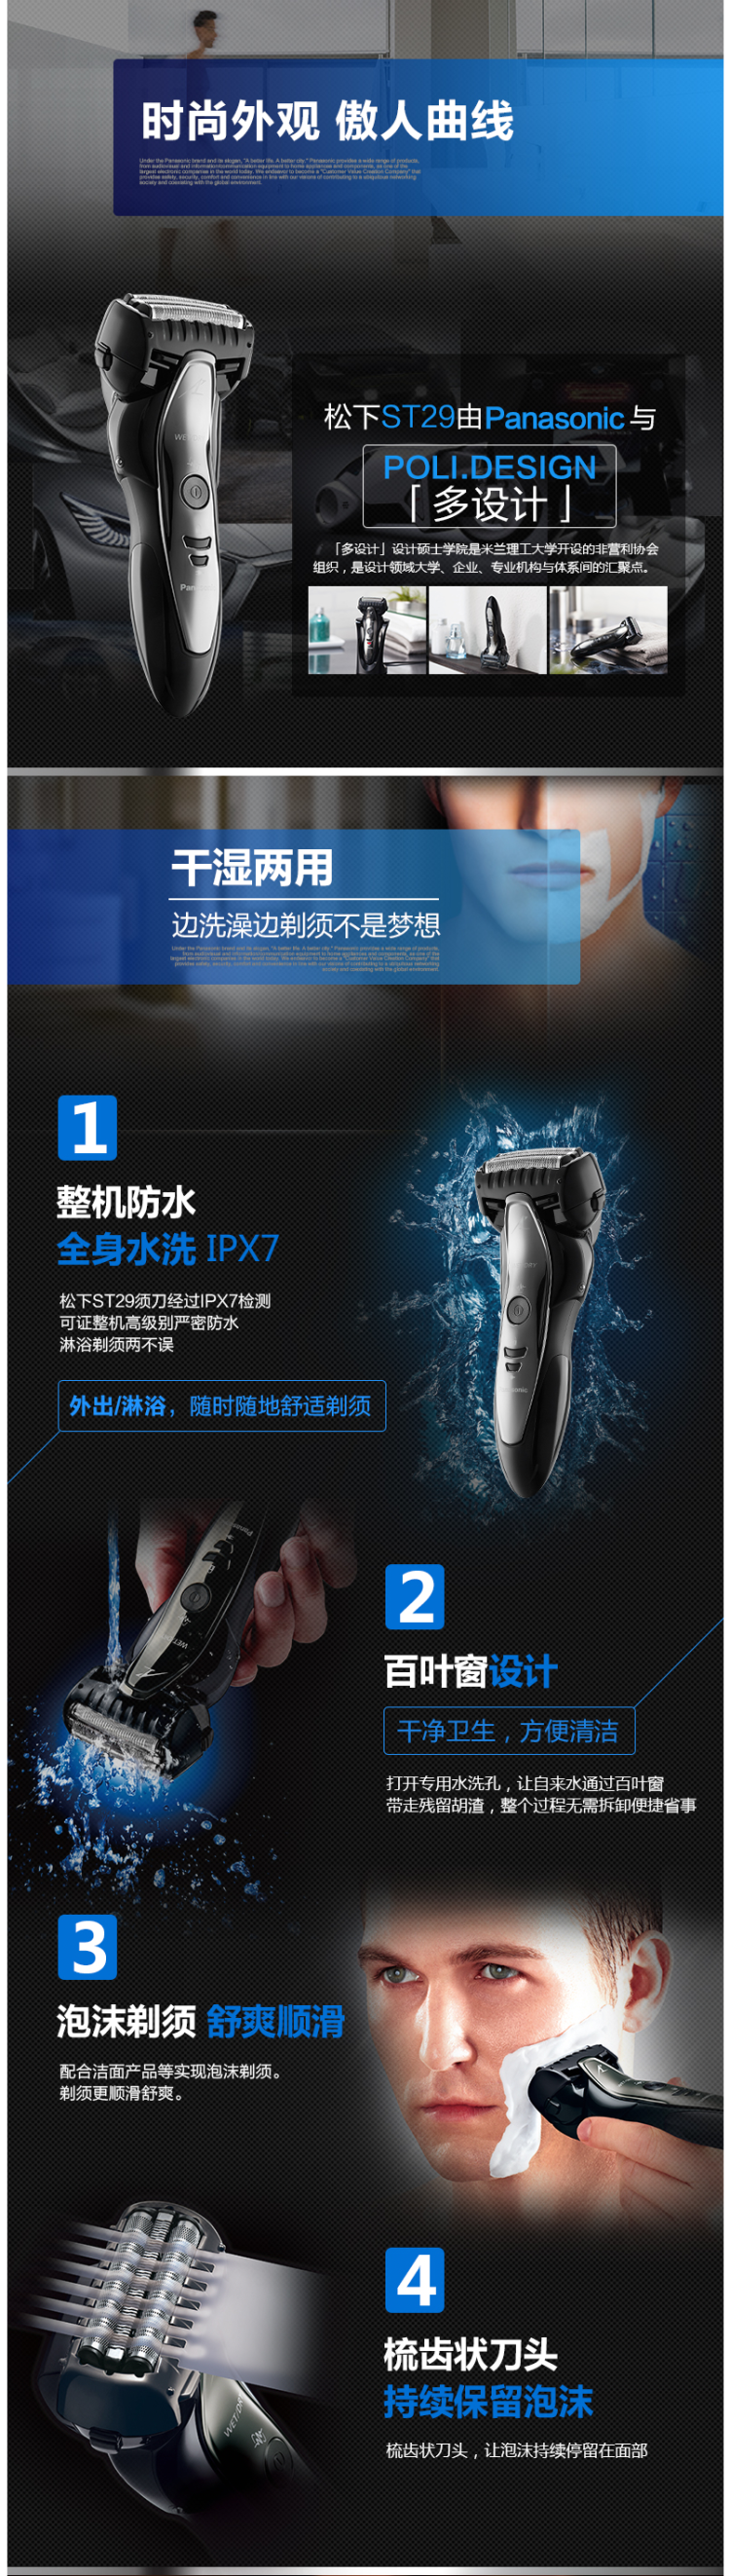 日本原装进口 松下 主力热销款 ST29 往复式电动剃须刀 日本安莱钢 图2